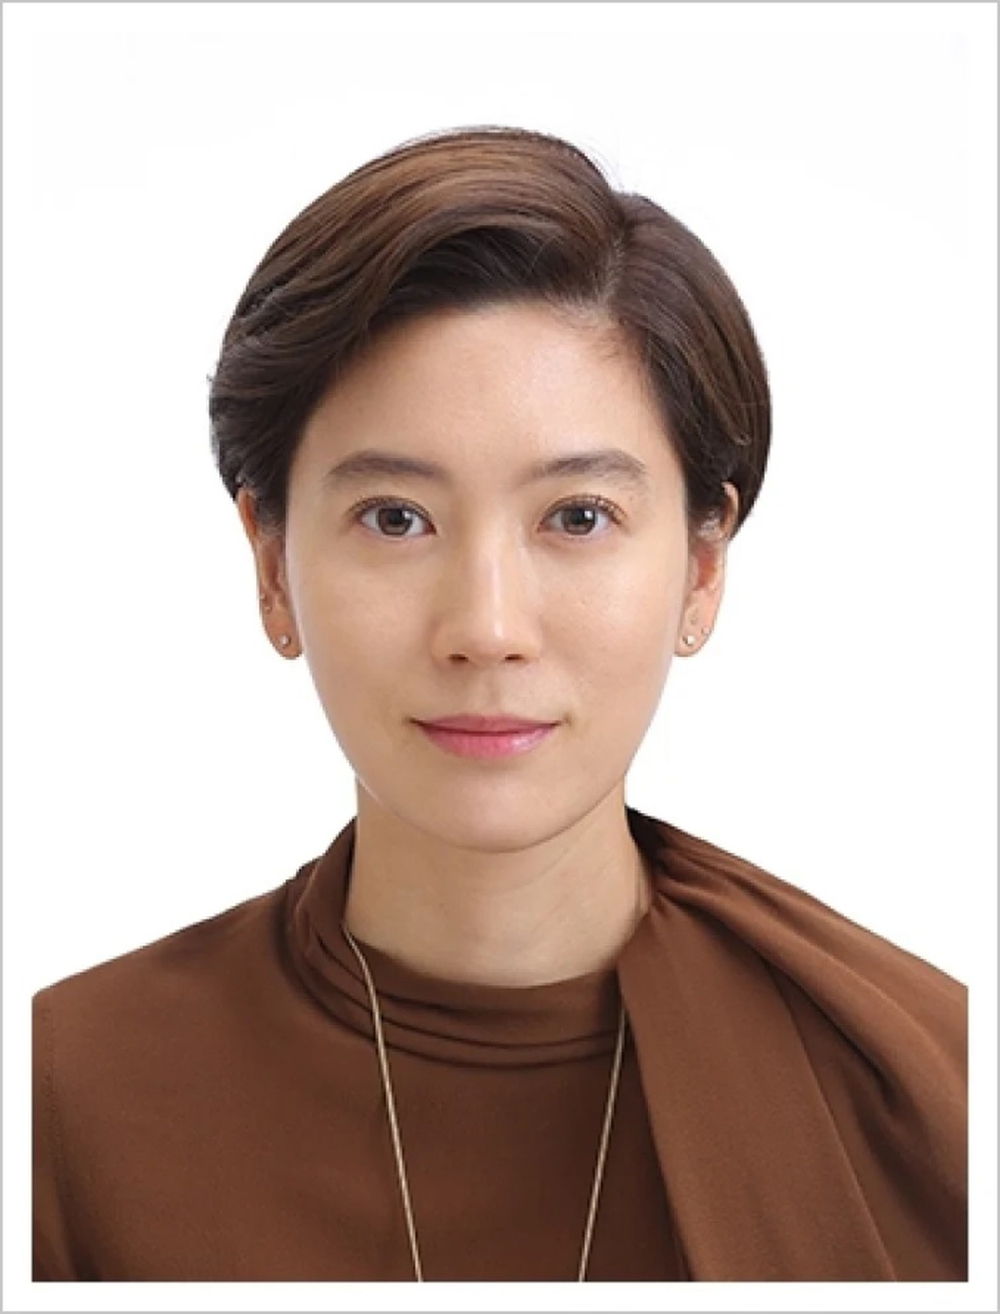 Cuộc đời “không tưởng” của vợ cũ Chủ tịch Samsung: Cưới người giàu nhất Hàn Quốc vẫn không hạnh phúc, tự đấu tranh vì cái kết viên mãn - Ảnh 3.